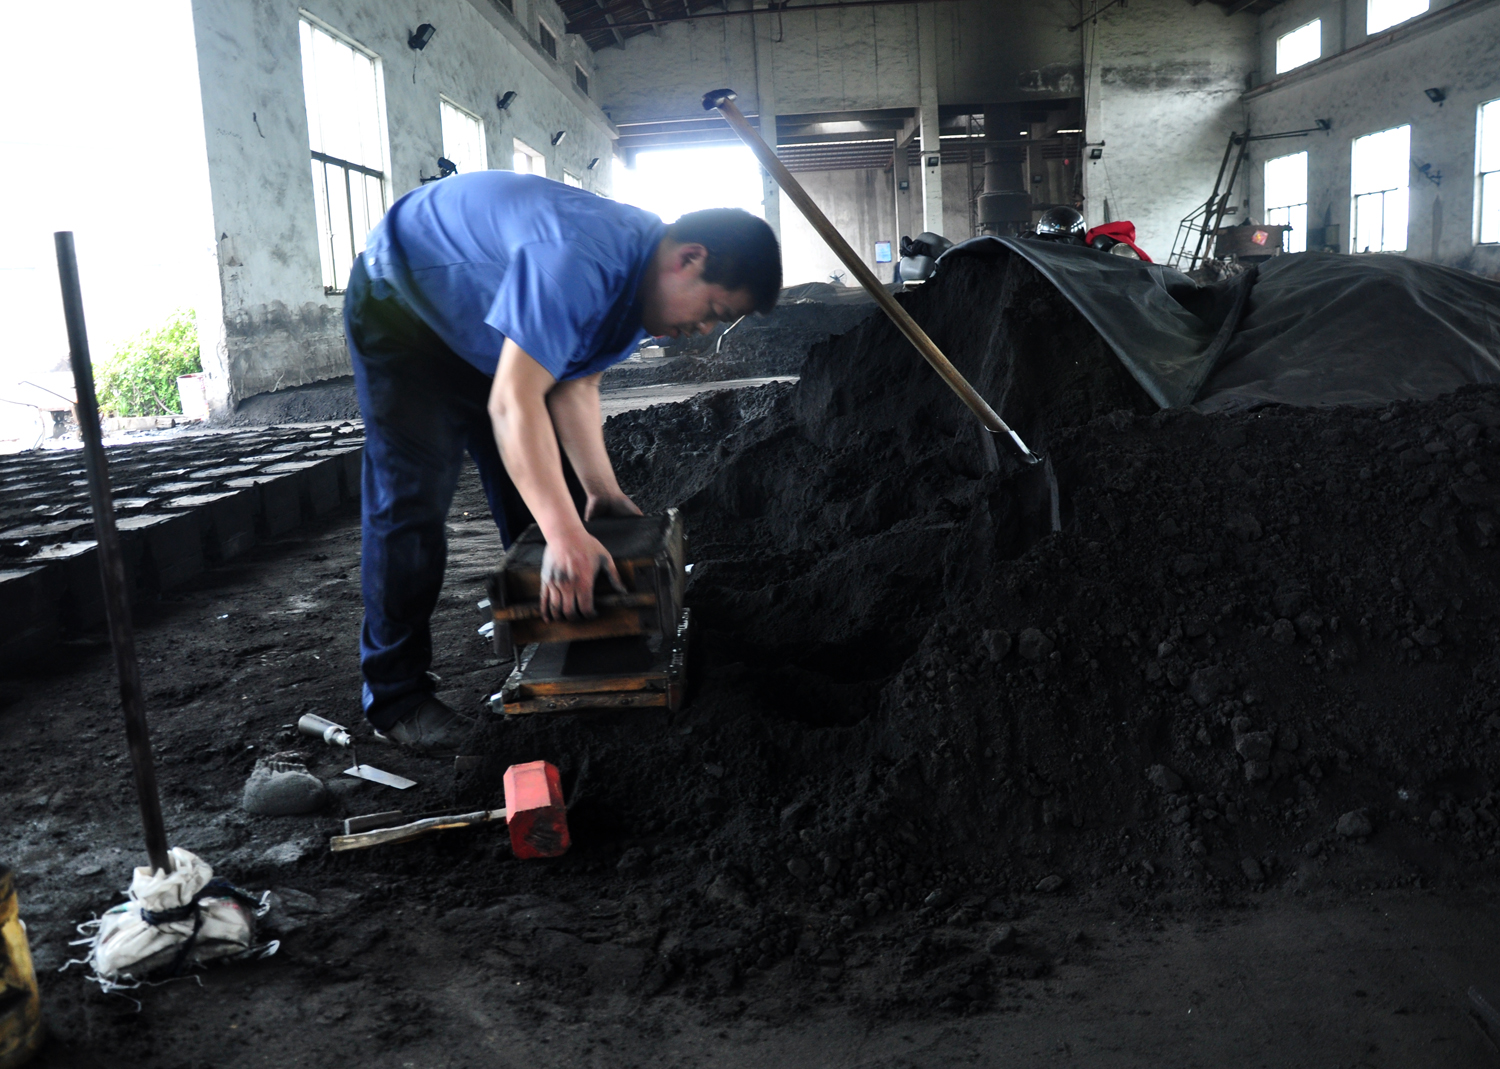 导墅镇佳飞亚机械有限公司工人陈金胡在铸造车间“造型”。（诸葛书清摄于4月12日）